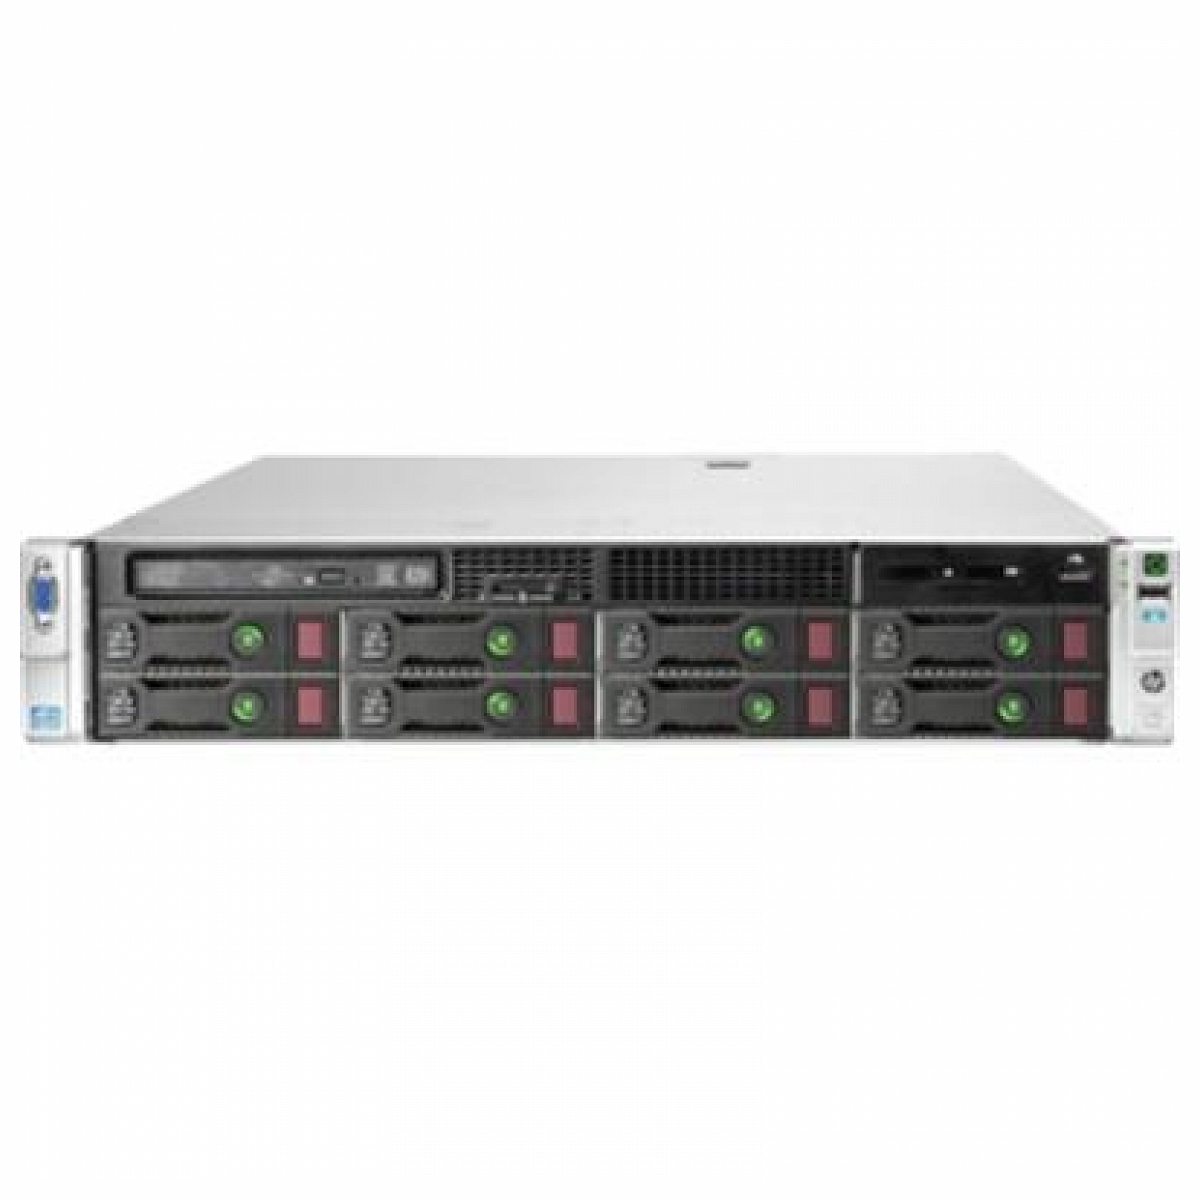 HPE 670857-S01 HP ProLiant DL380p Gen8 E5-2609 2.40GHz 4-core 1P 8GB-R P420